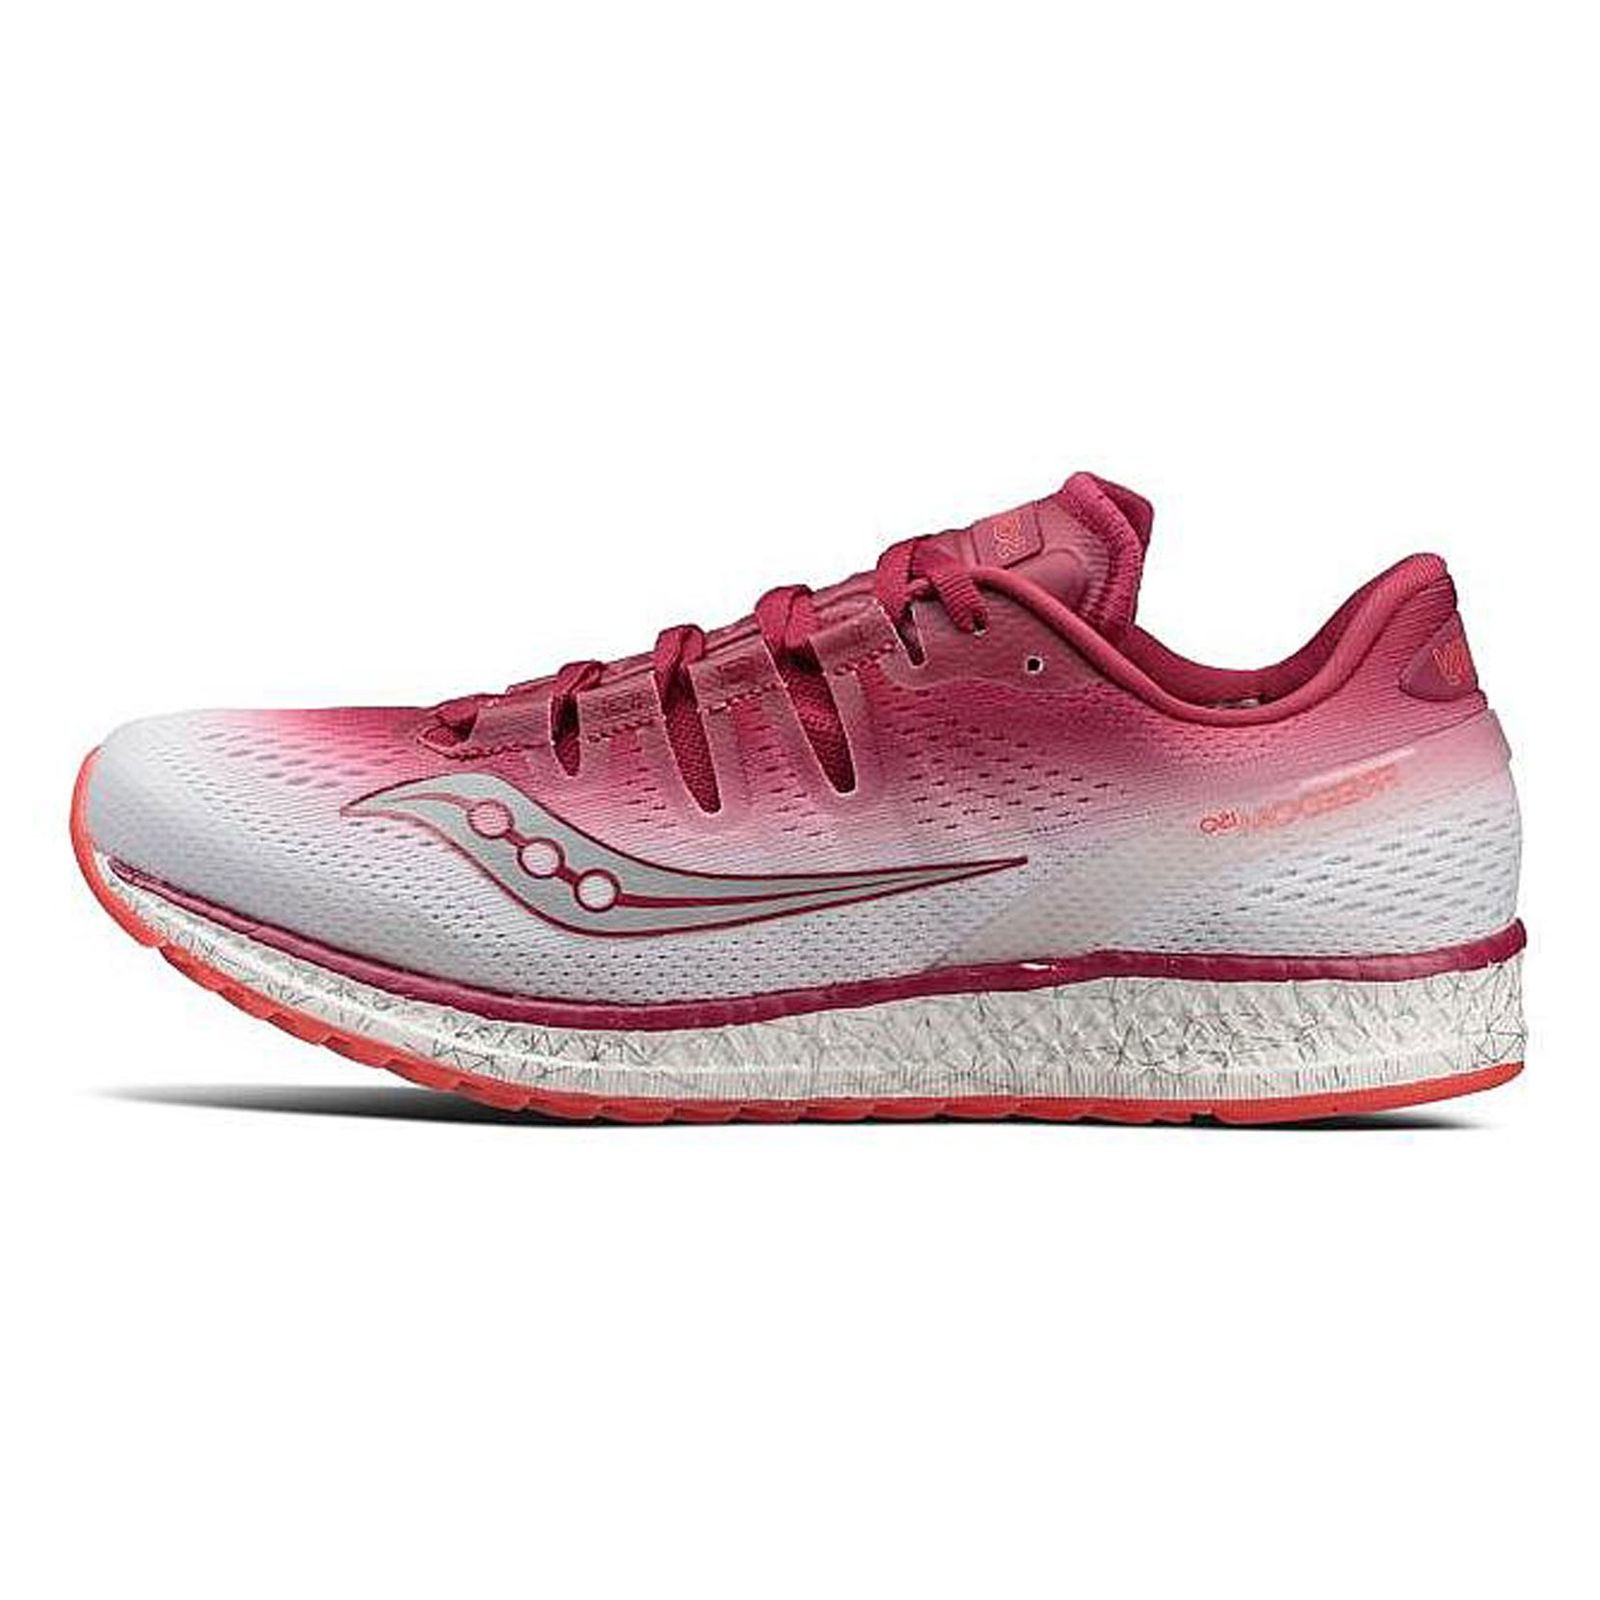 کفش مخصوص دویدن زنانه ساکنی مدل Freedom Iso کد S10355-5 -  - 1